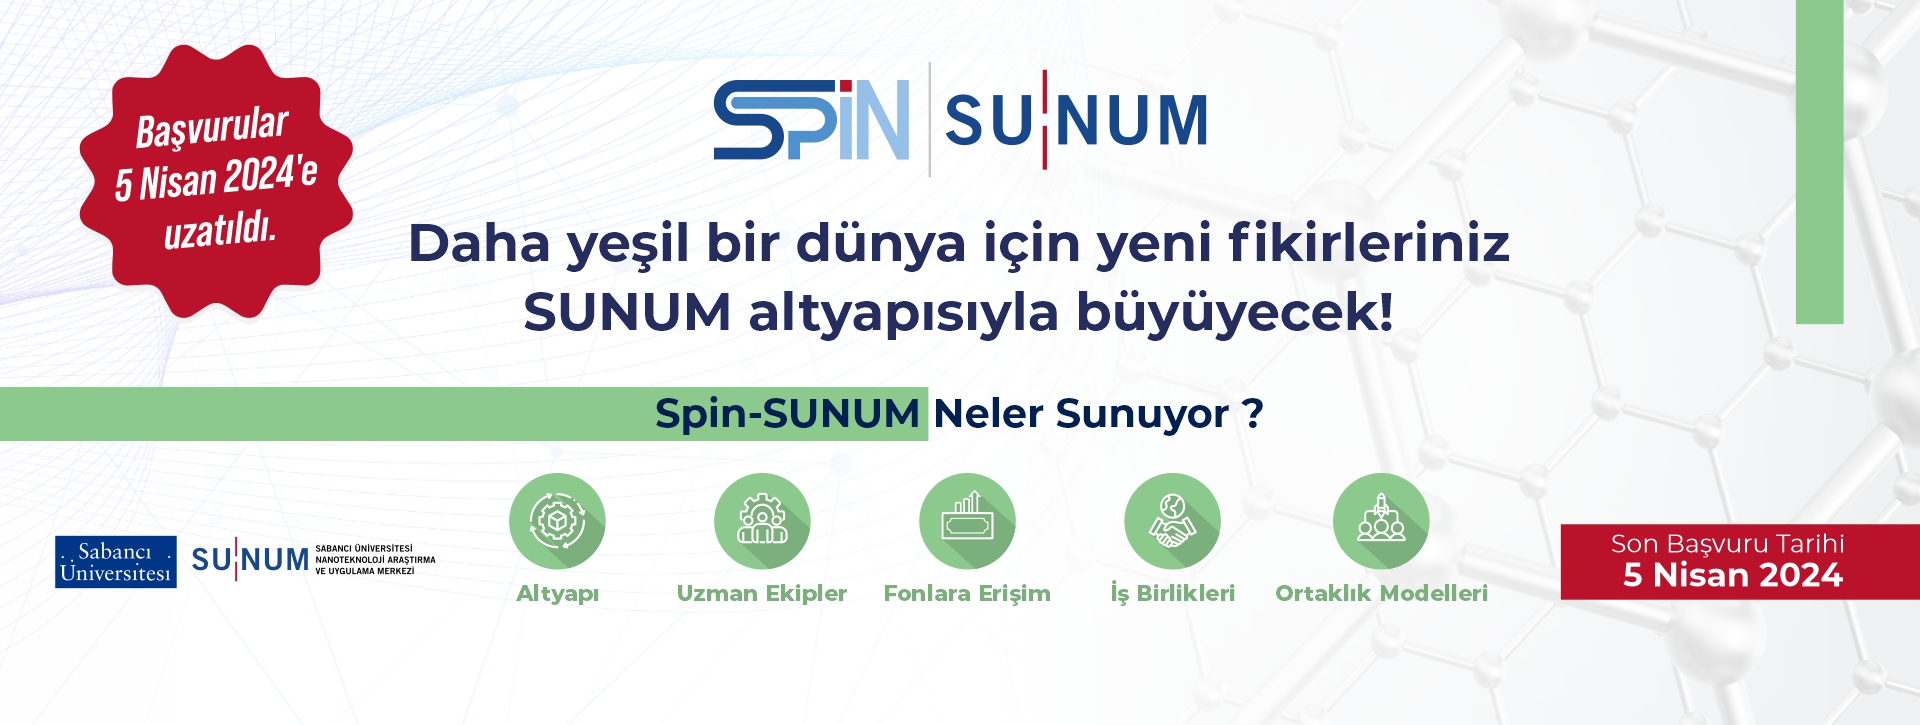 SpinSUNUM Yeni Tarih tr_1920x725-08-03-2024.jpg